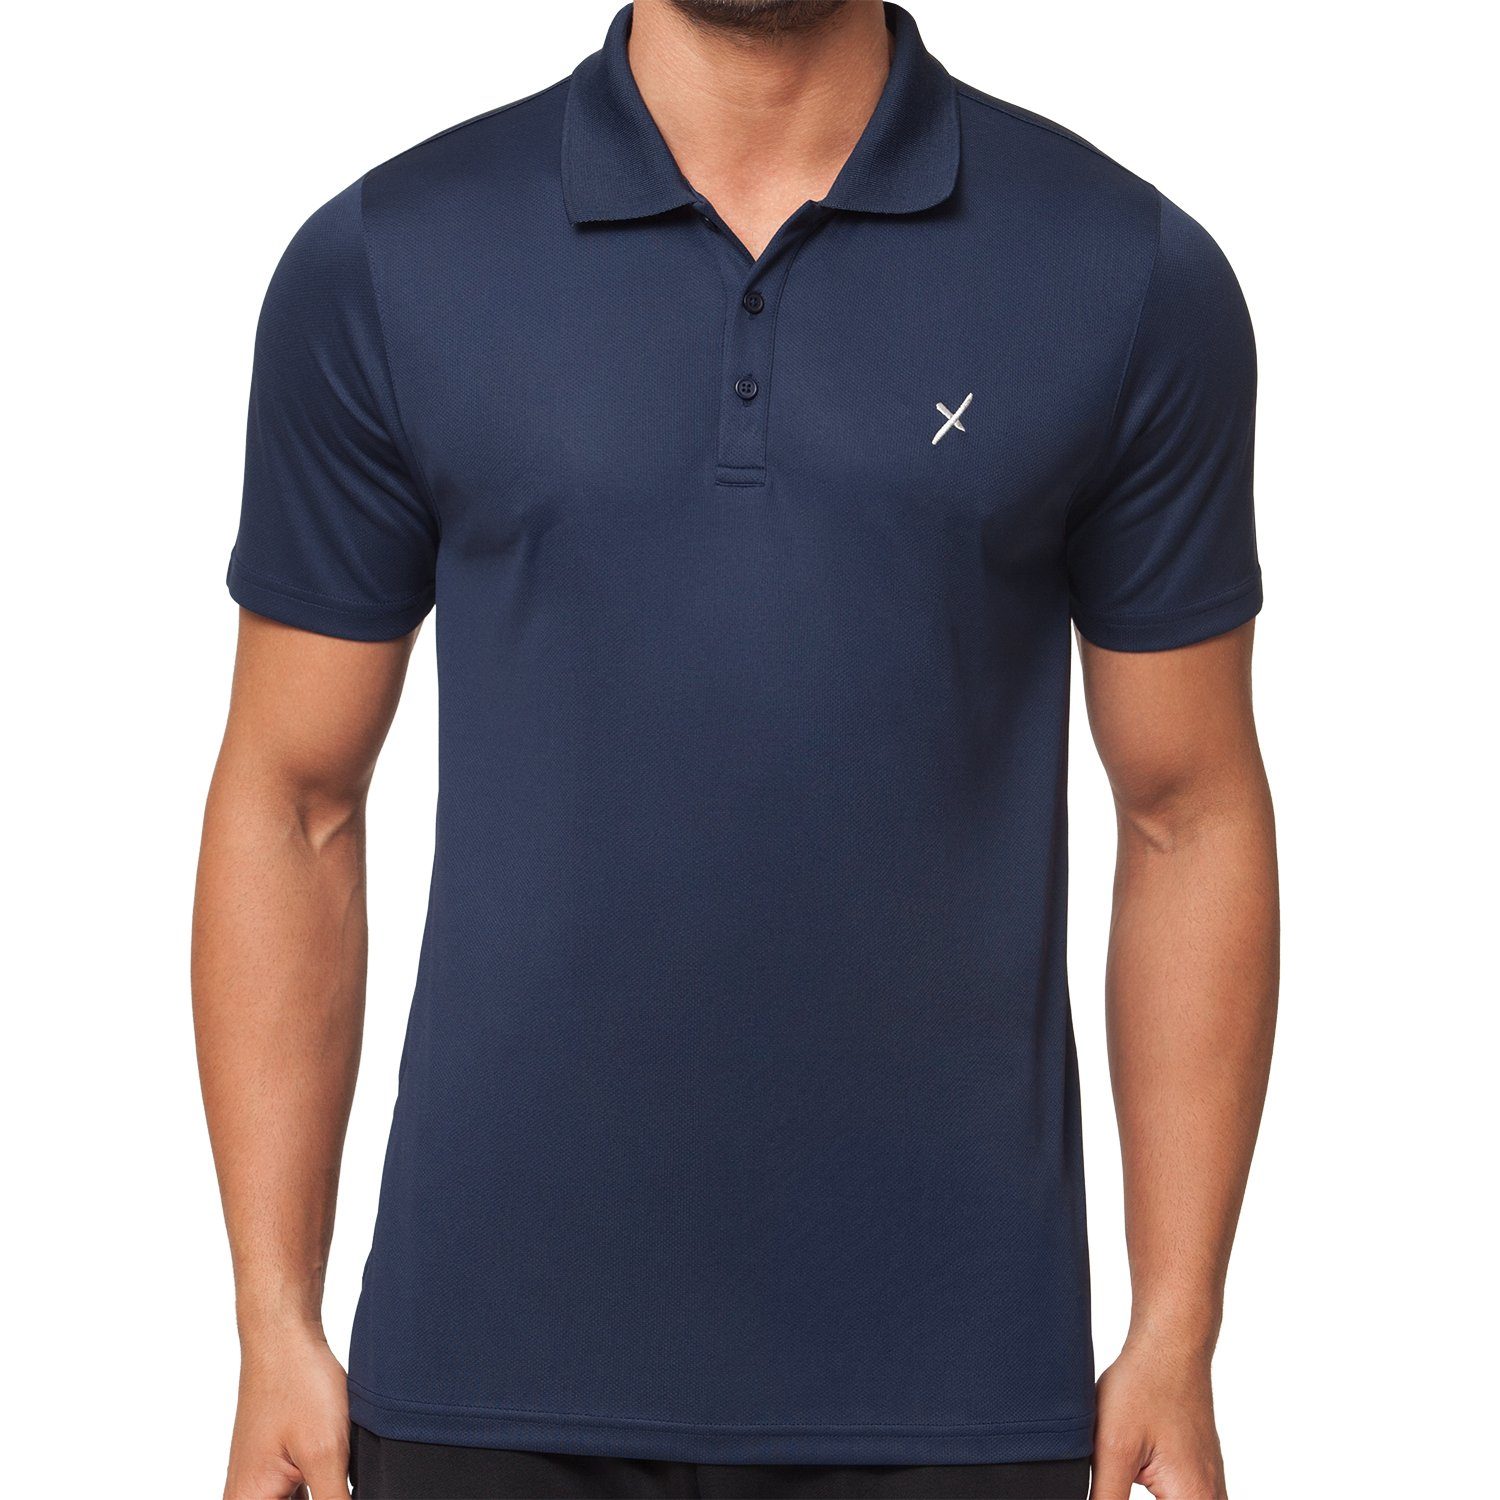 Polo-Shirt Collection Herren Sportswear Shirt Navy CFLEX Trainingsshirt Sport Fitness